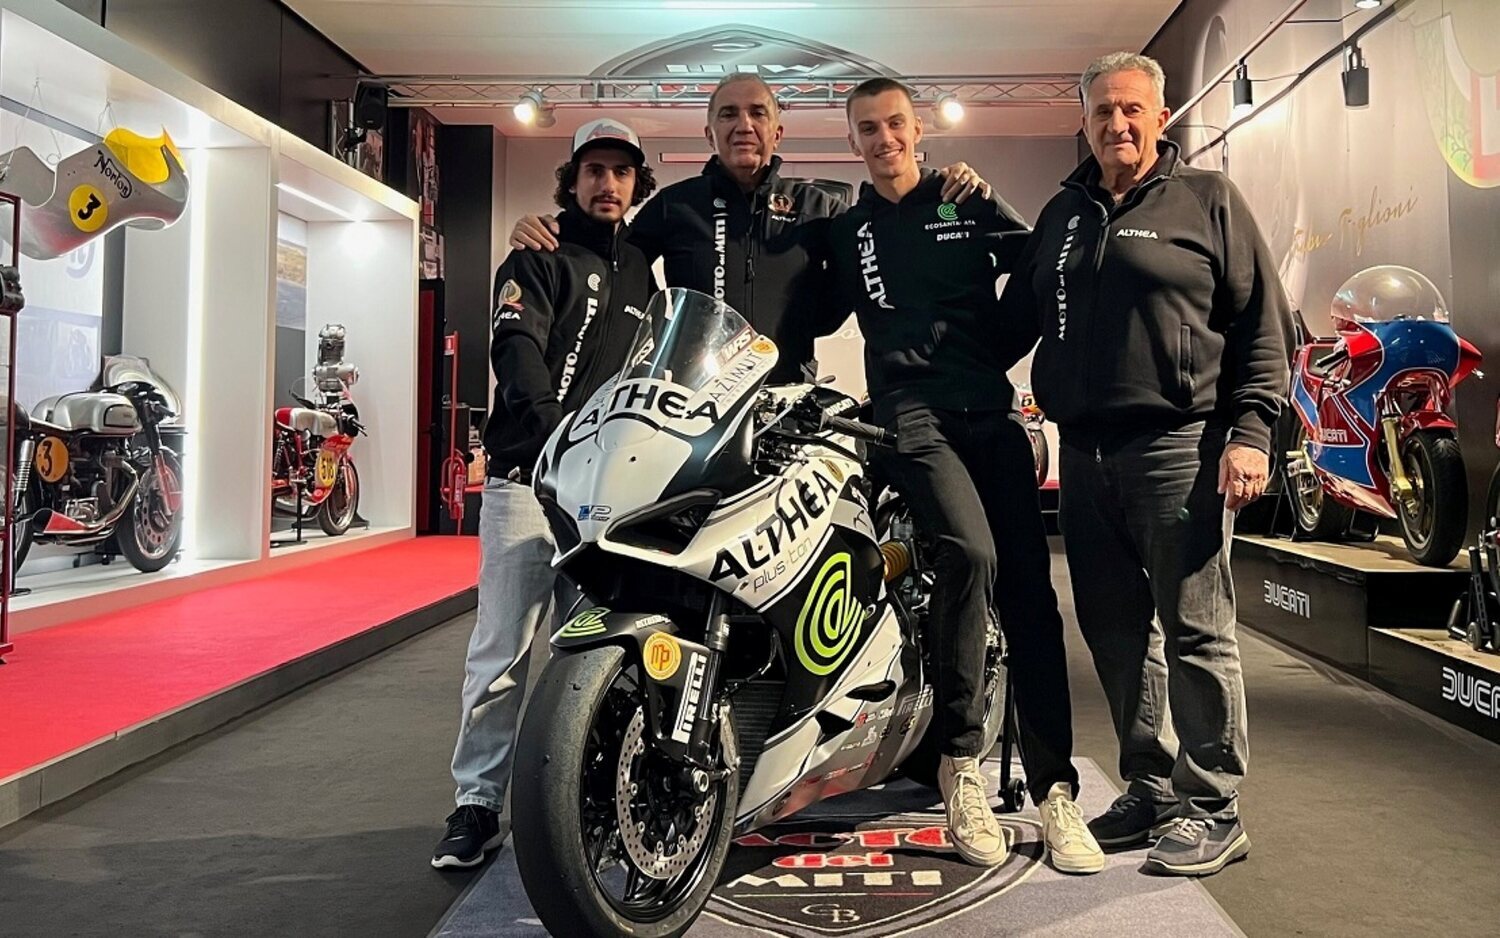 Niccolò Antonelli y Piotr Biesiekirski fichan por Althea Racing en Supersport